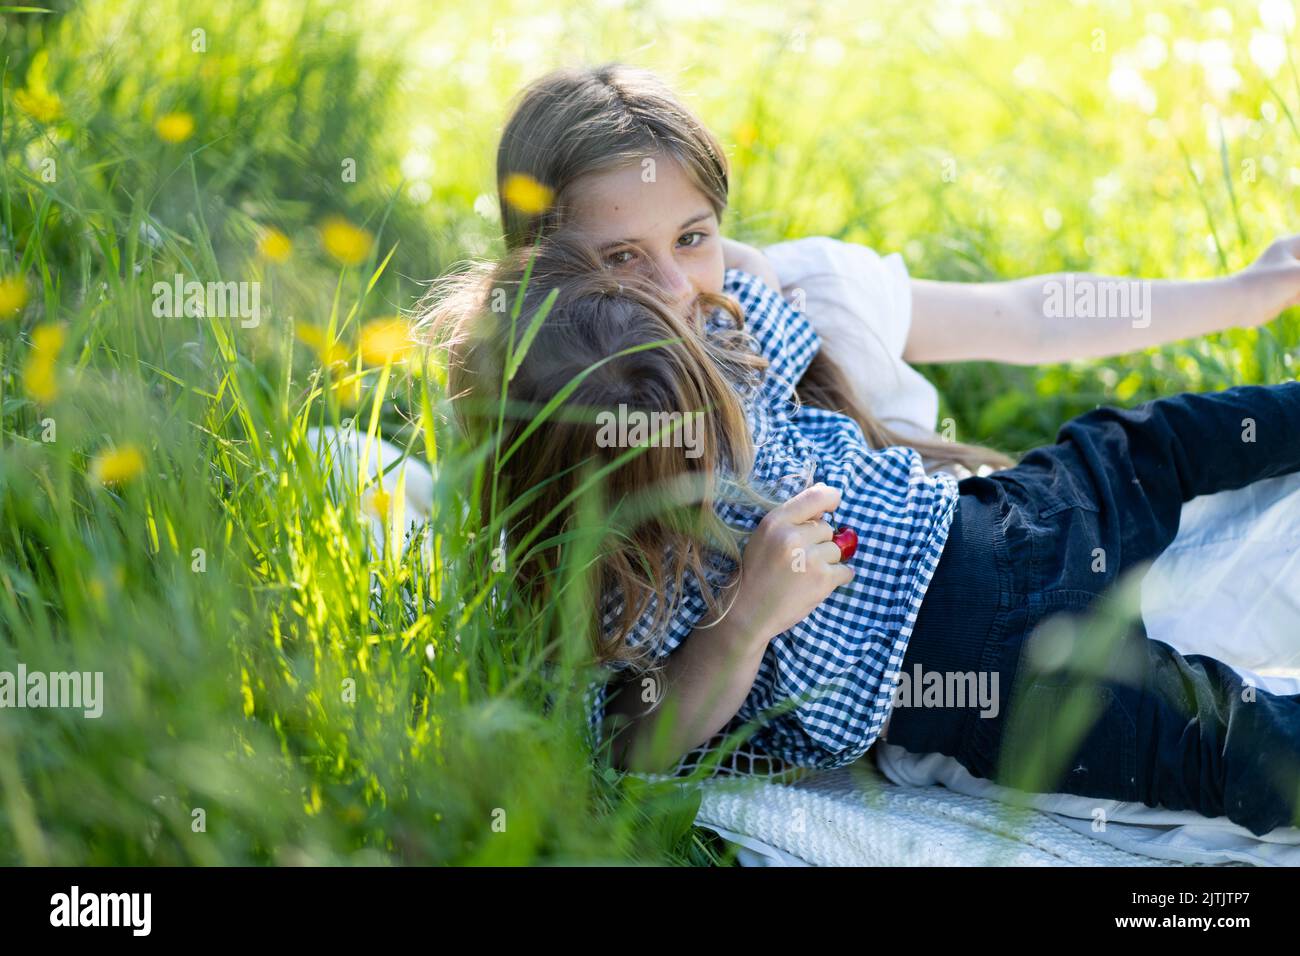 Bruder und Schwester spielen im Park inmitten des grünen Grases. Kinder umarmen sich fest. Picknick außerhalb der Stadt. Kindheit. Beziehungen. Stockfoto